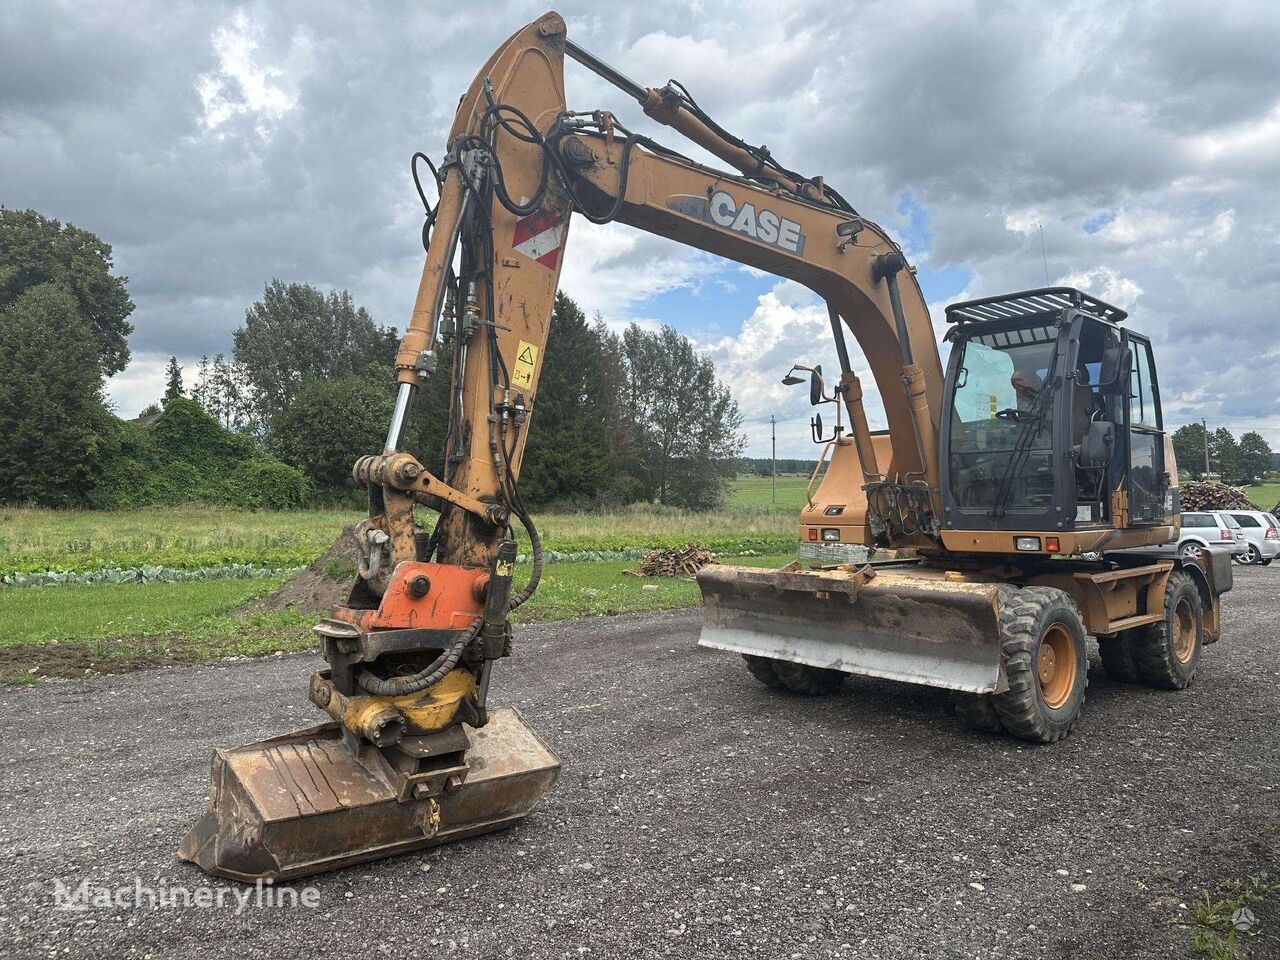 Case WX145 wheel excavator